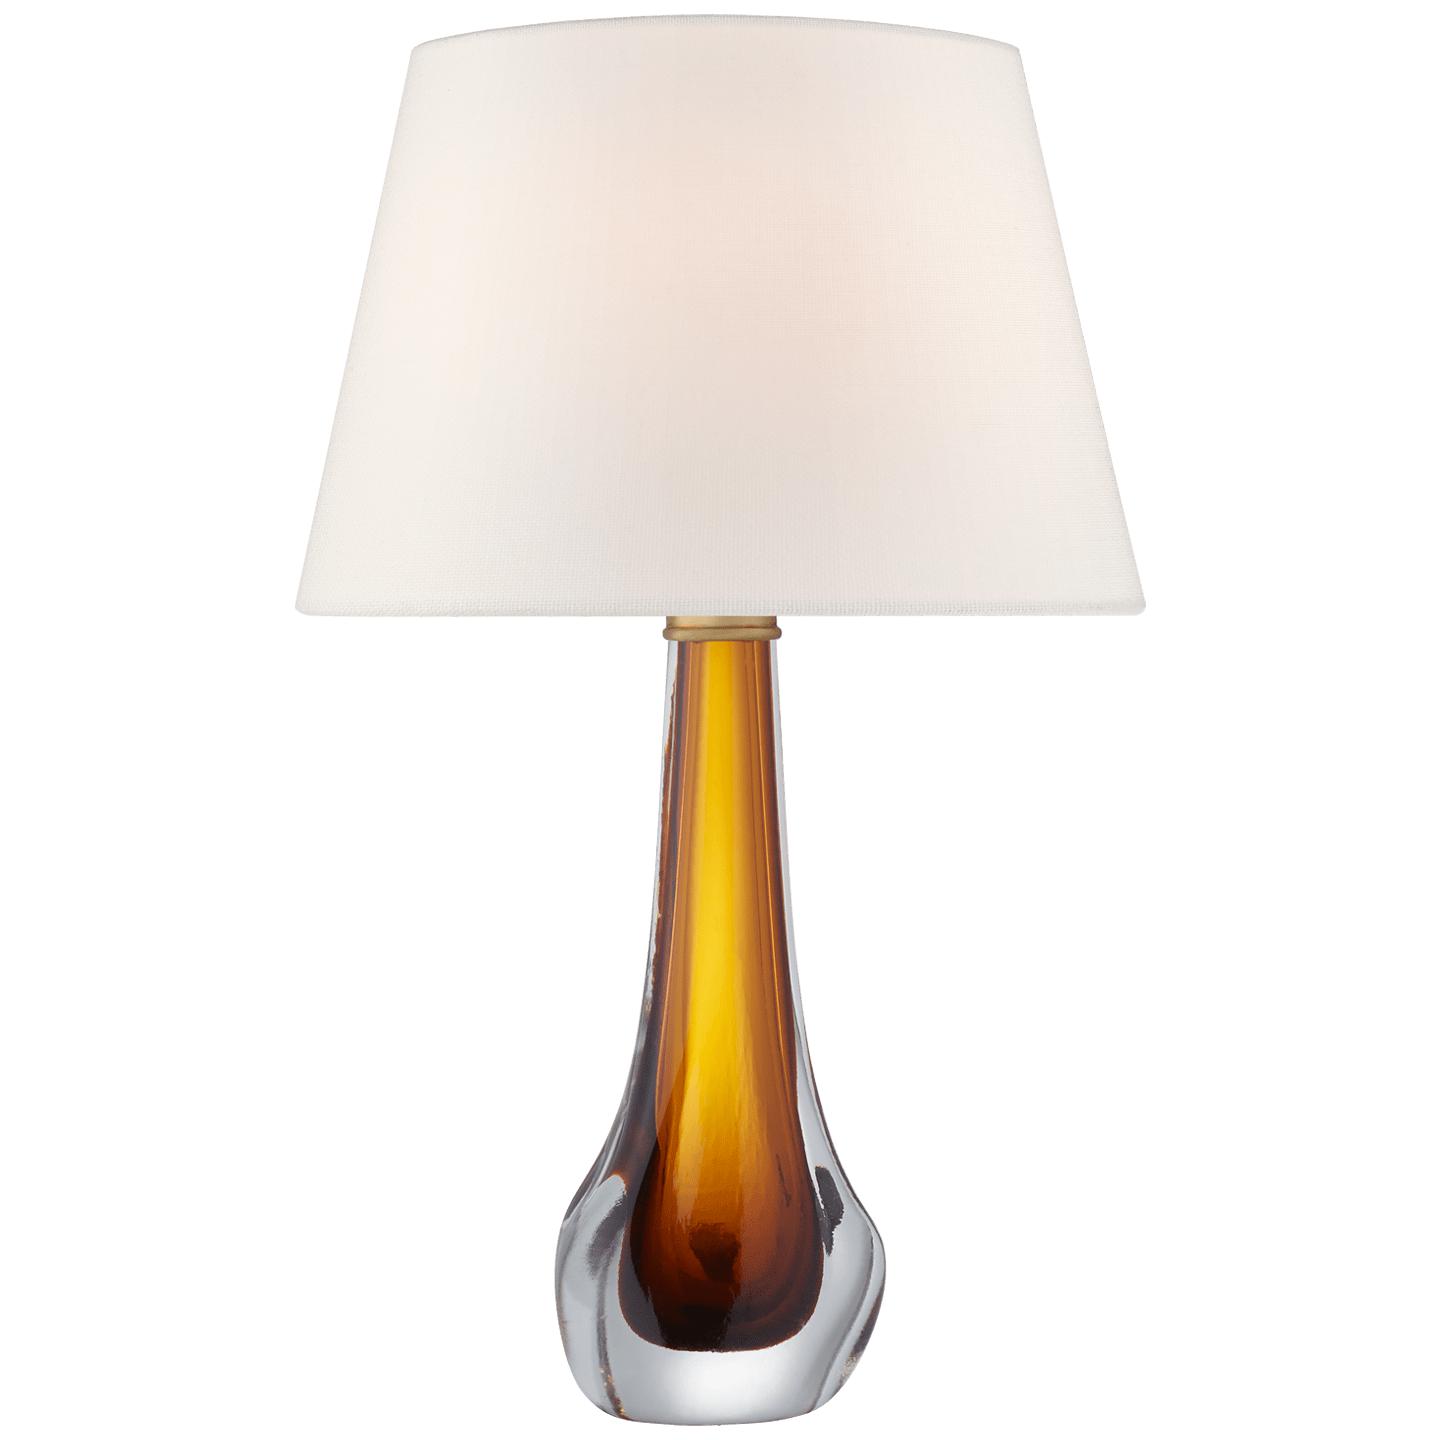 Купить Настольная лампа Christa Large Table Lamp в интернет-магазине roooms.ru